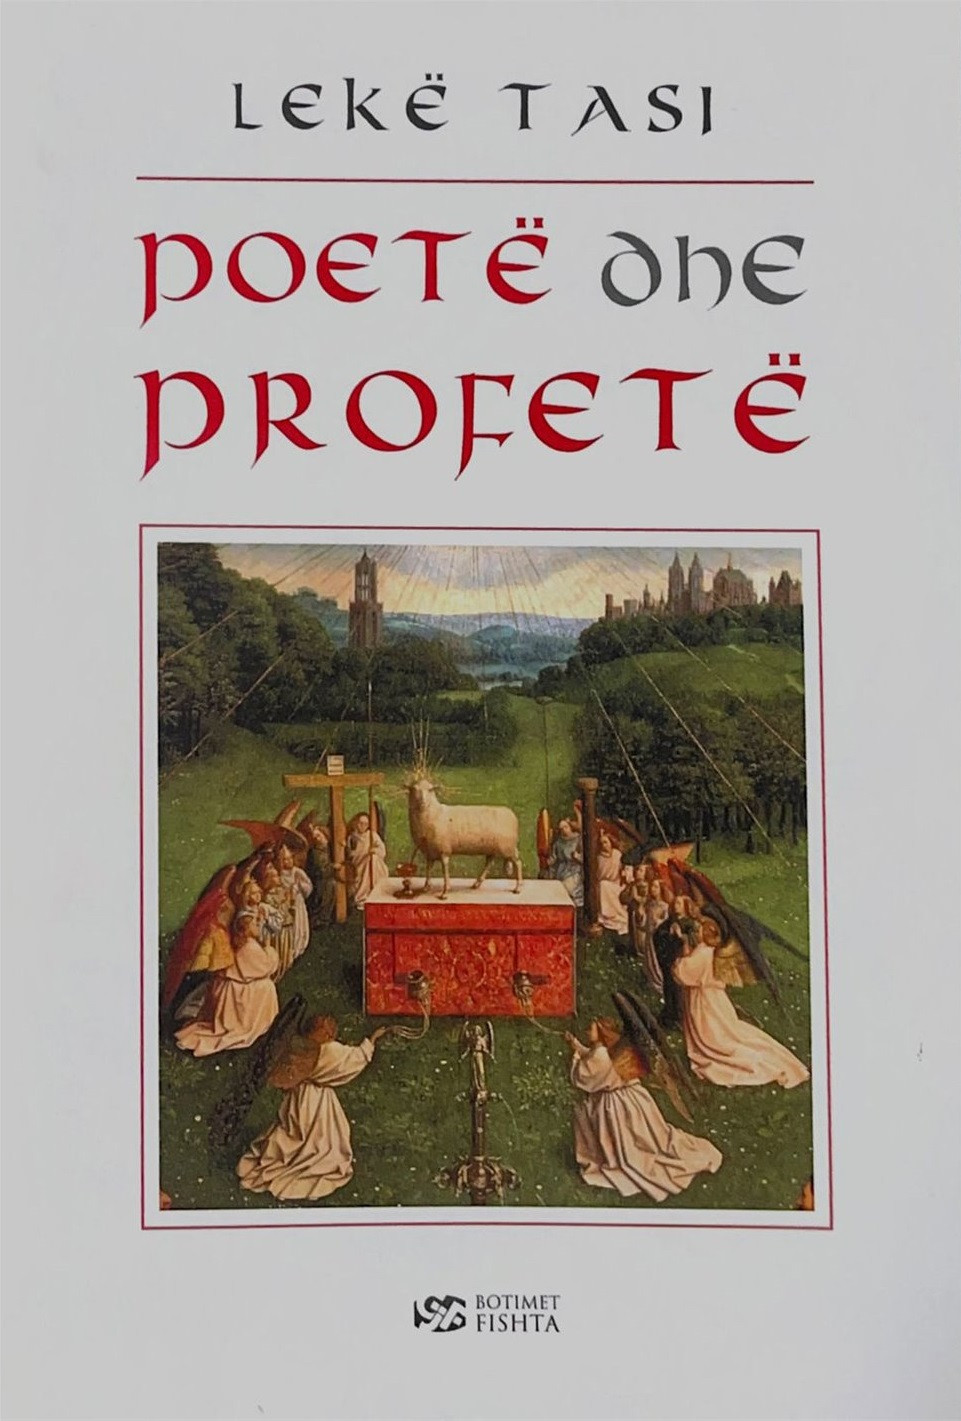 Poete dhe profete